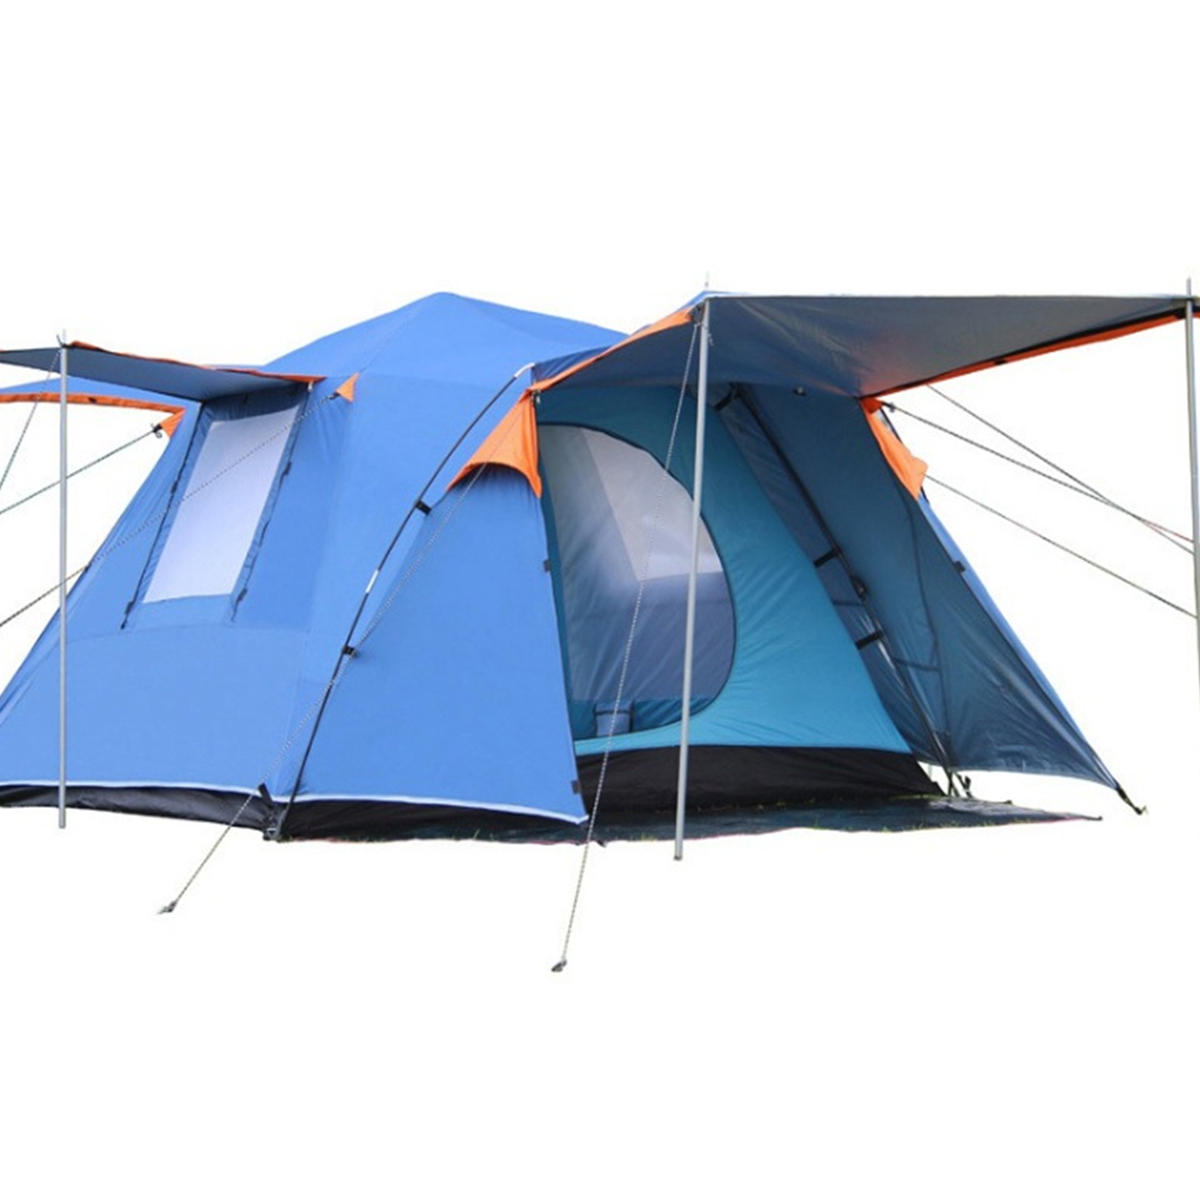 Tenda automatica da campeggio per 3-4 persone all'aperto, impermeabile e a doppio strato con tenda parasole.